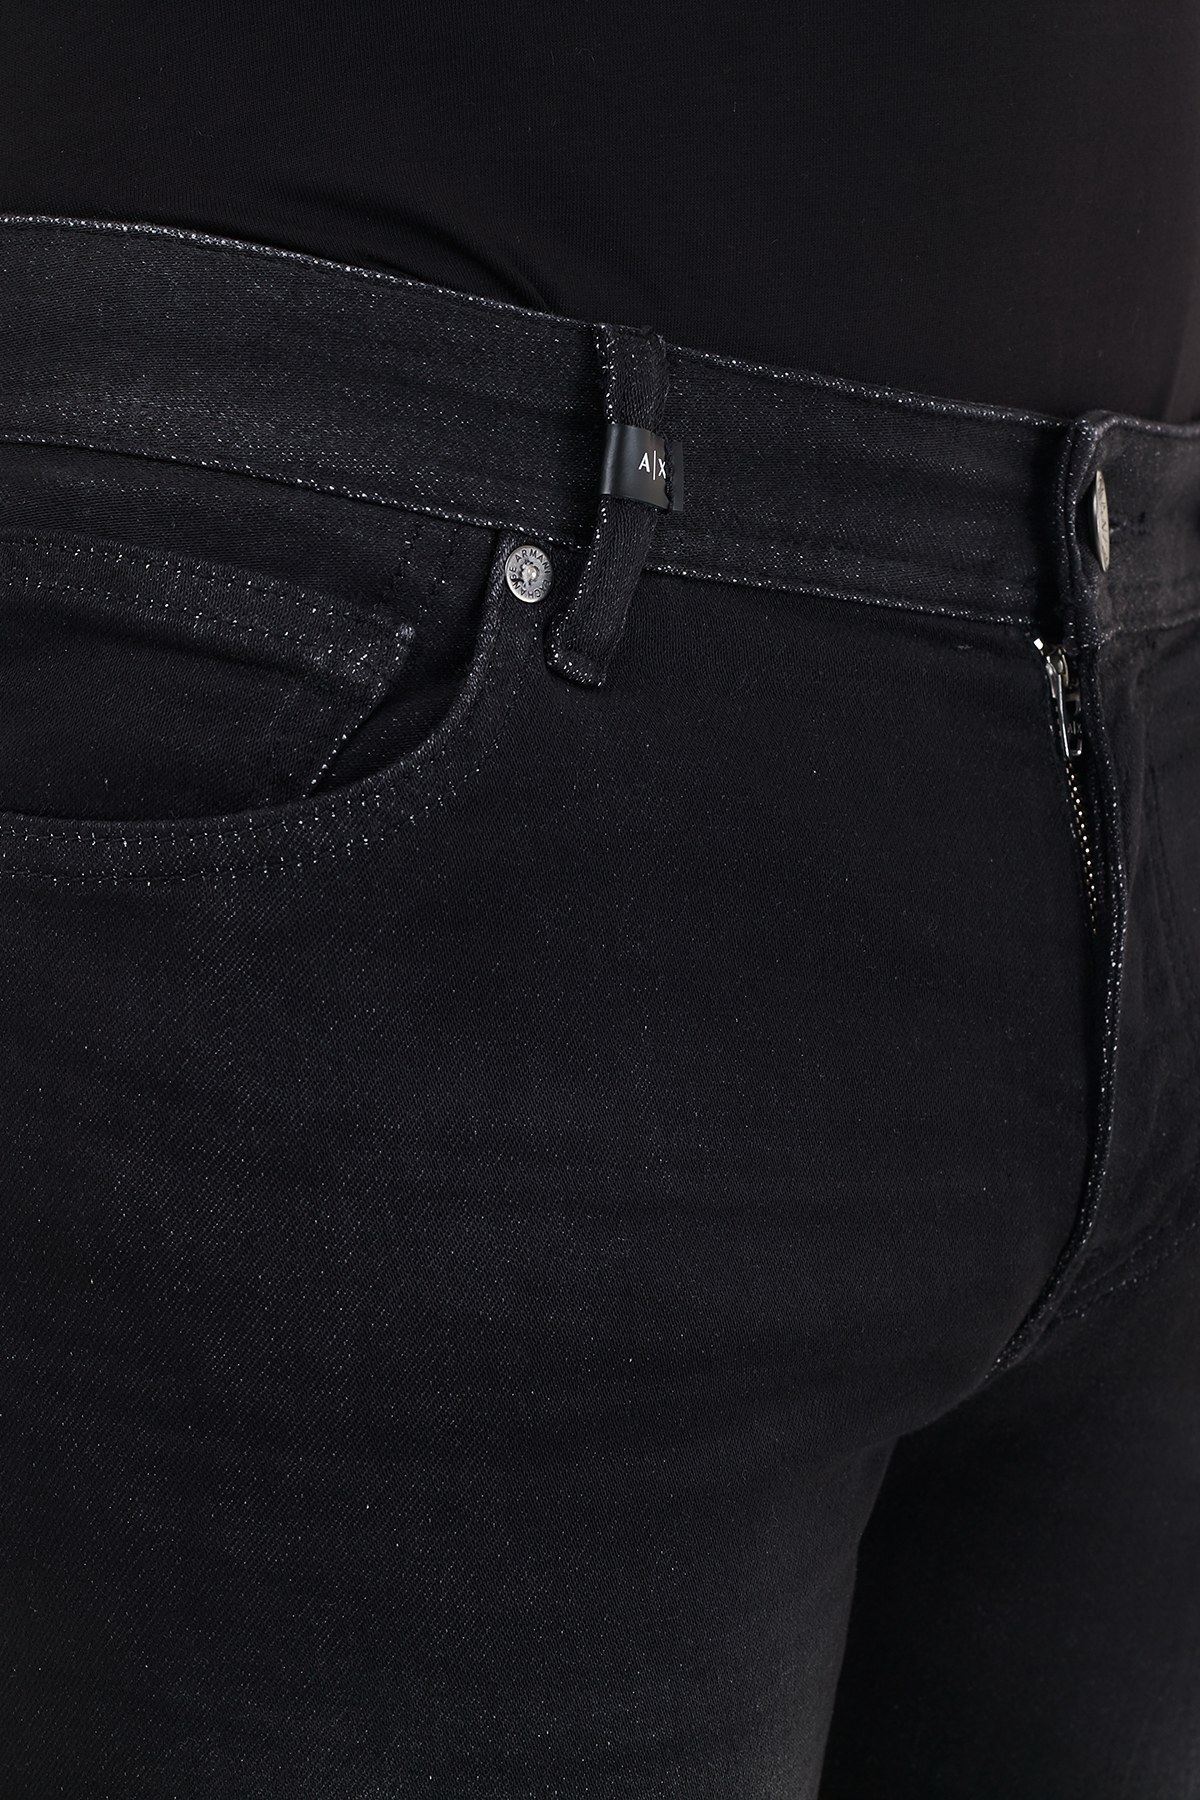 Armani Exchange Pamuklu Skinny Fit J14 Jeans Erkek Kot Pantolon 6HZJ14 Z9QMZ 0204 SİYAH